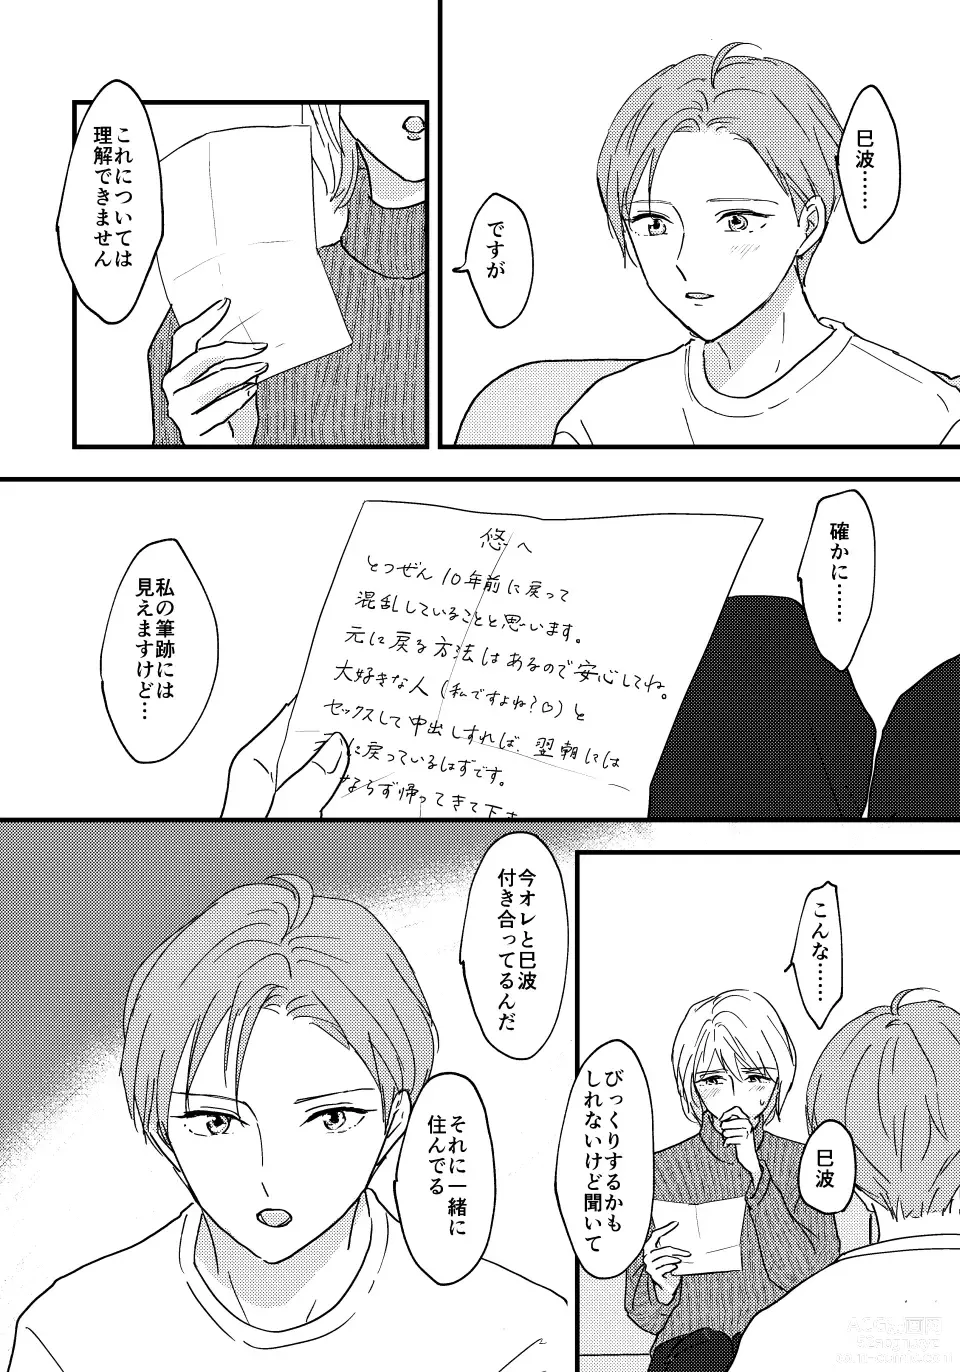 Page 5 of doujinshi Otona ni Nattara